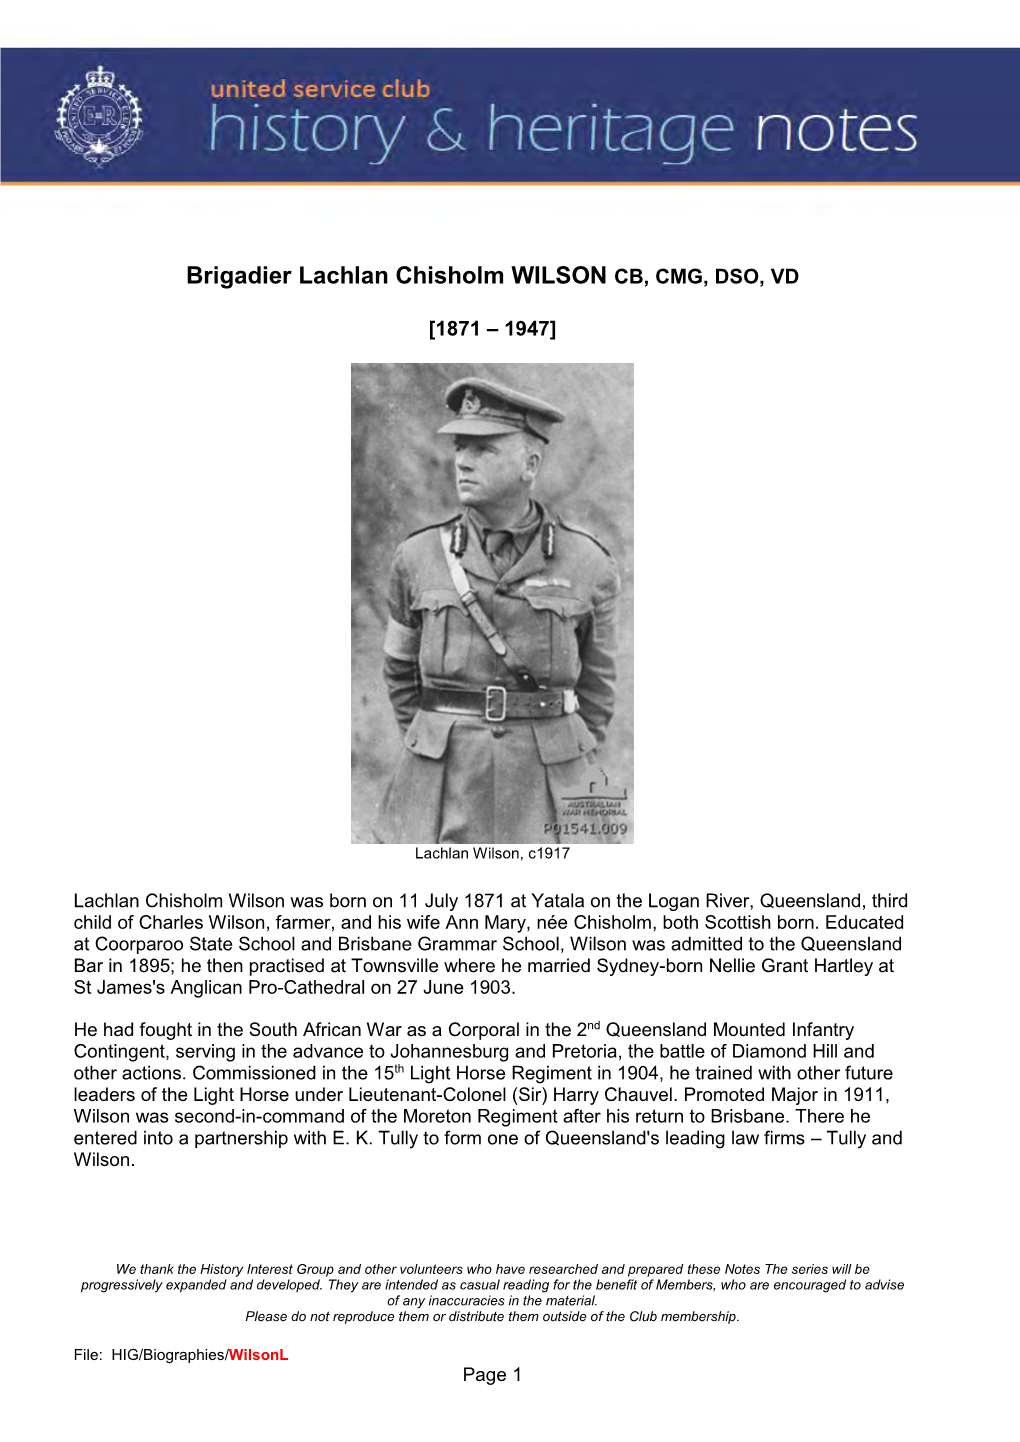 Brigadier L.C. WILSON CB, CMG, DSO, VD